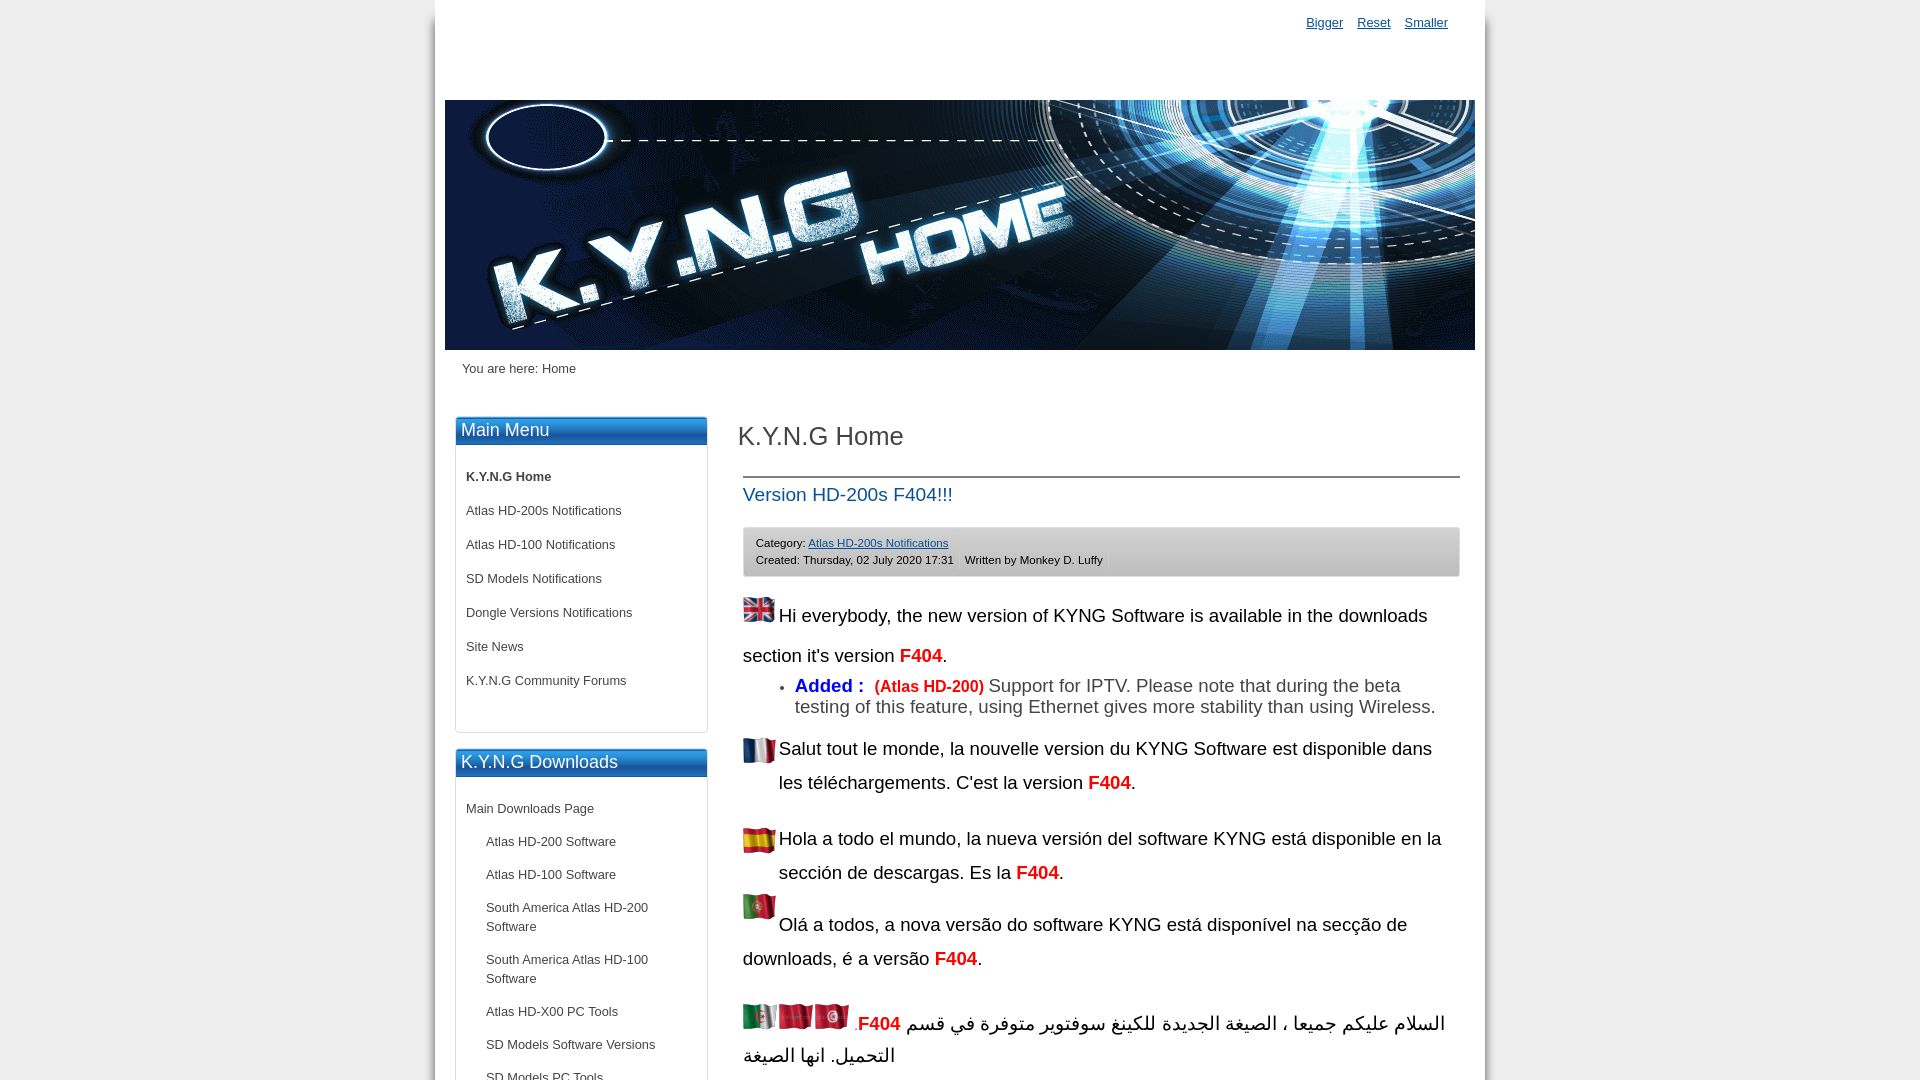 État du site web home.kyngdvb.com est   EN LIGNE